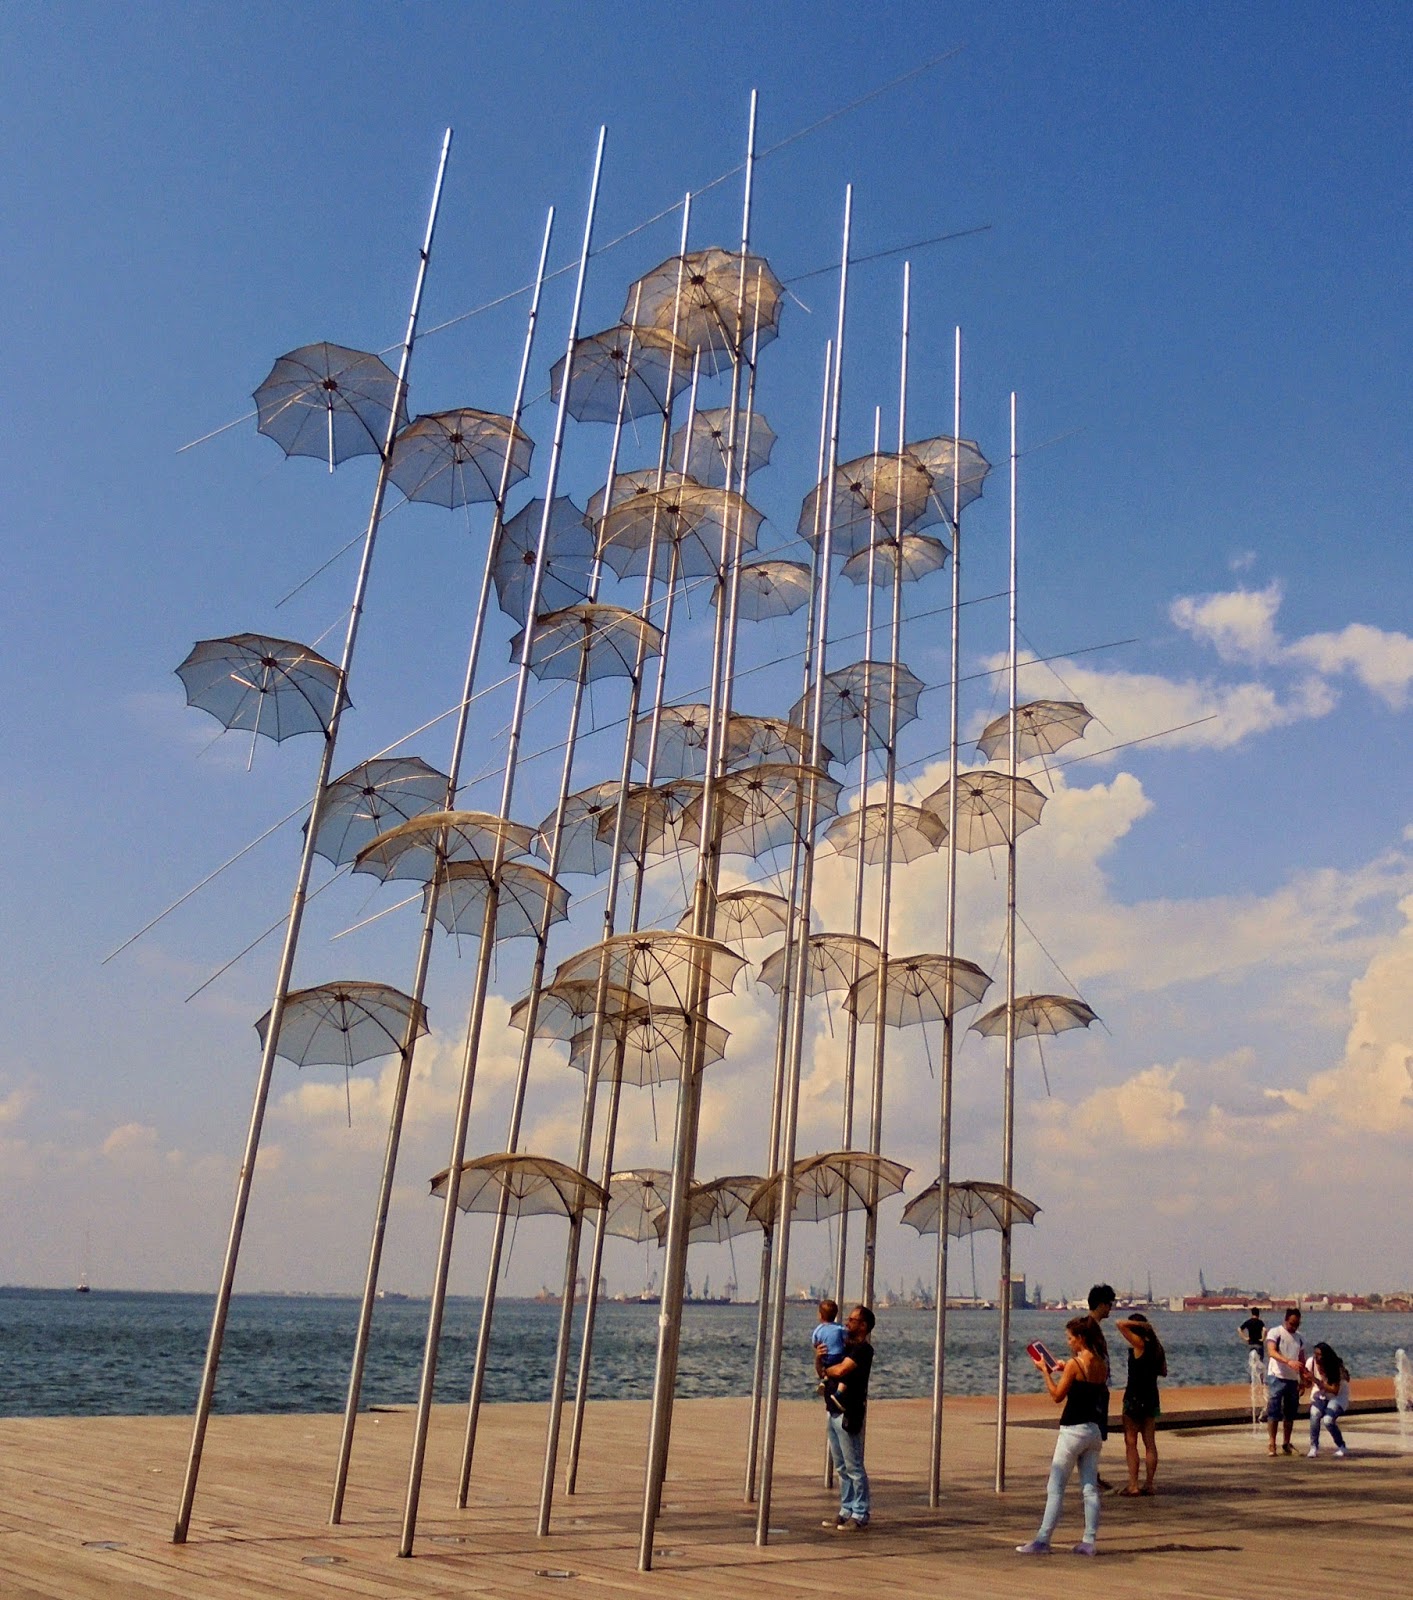 το γλυπτό Ομπρέλες του Ζογγολόπουλου στη νέα παραλία της Θεσσαλονίκης